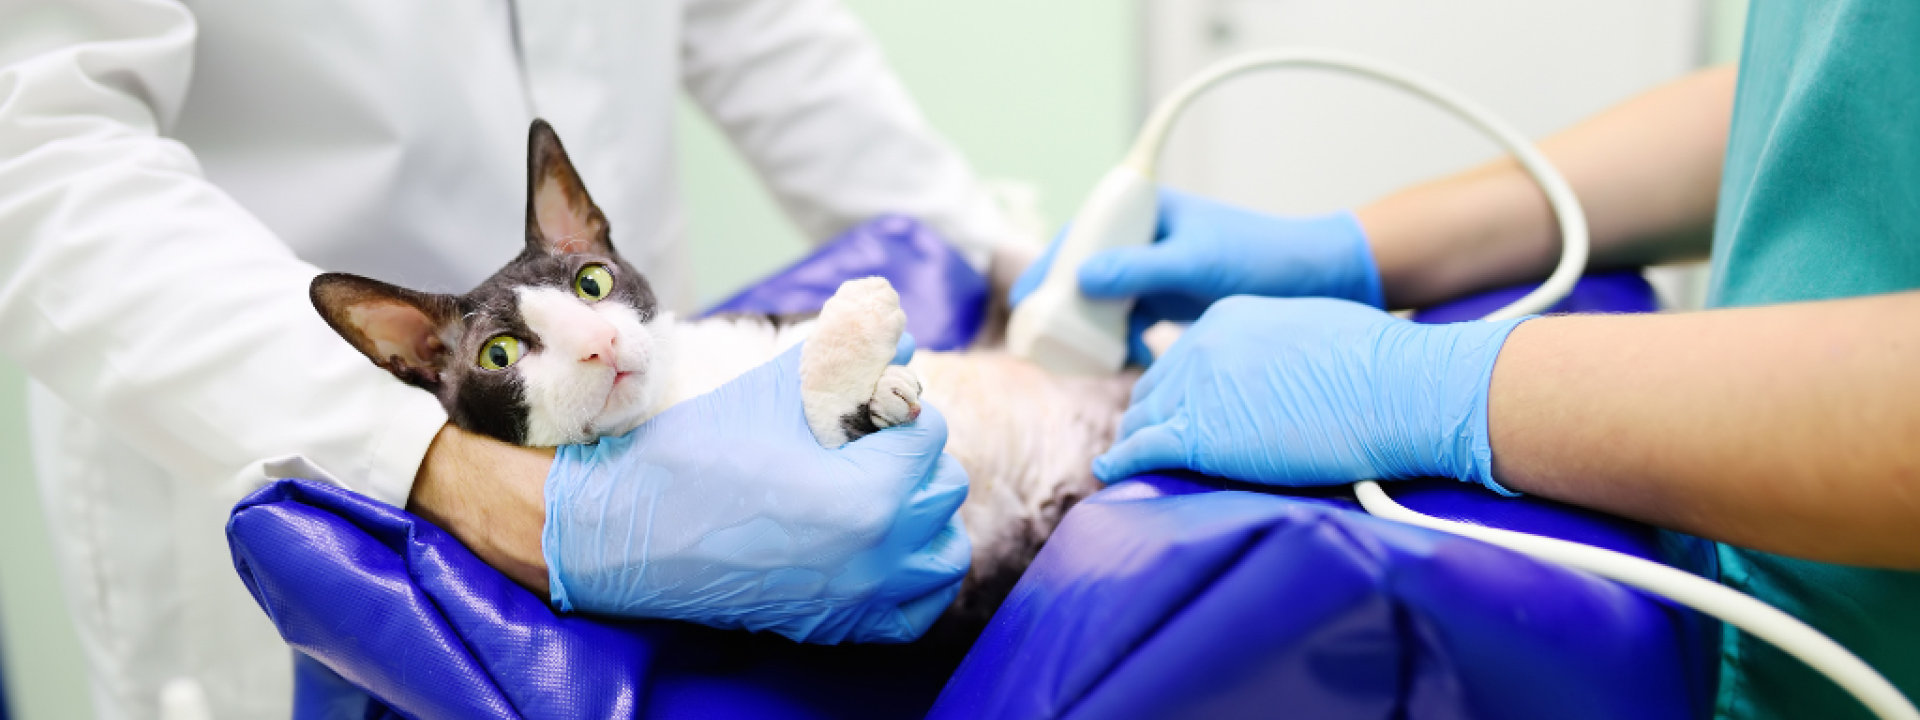 Pregnant cat receiving an ultrasound.